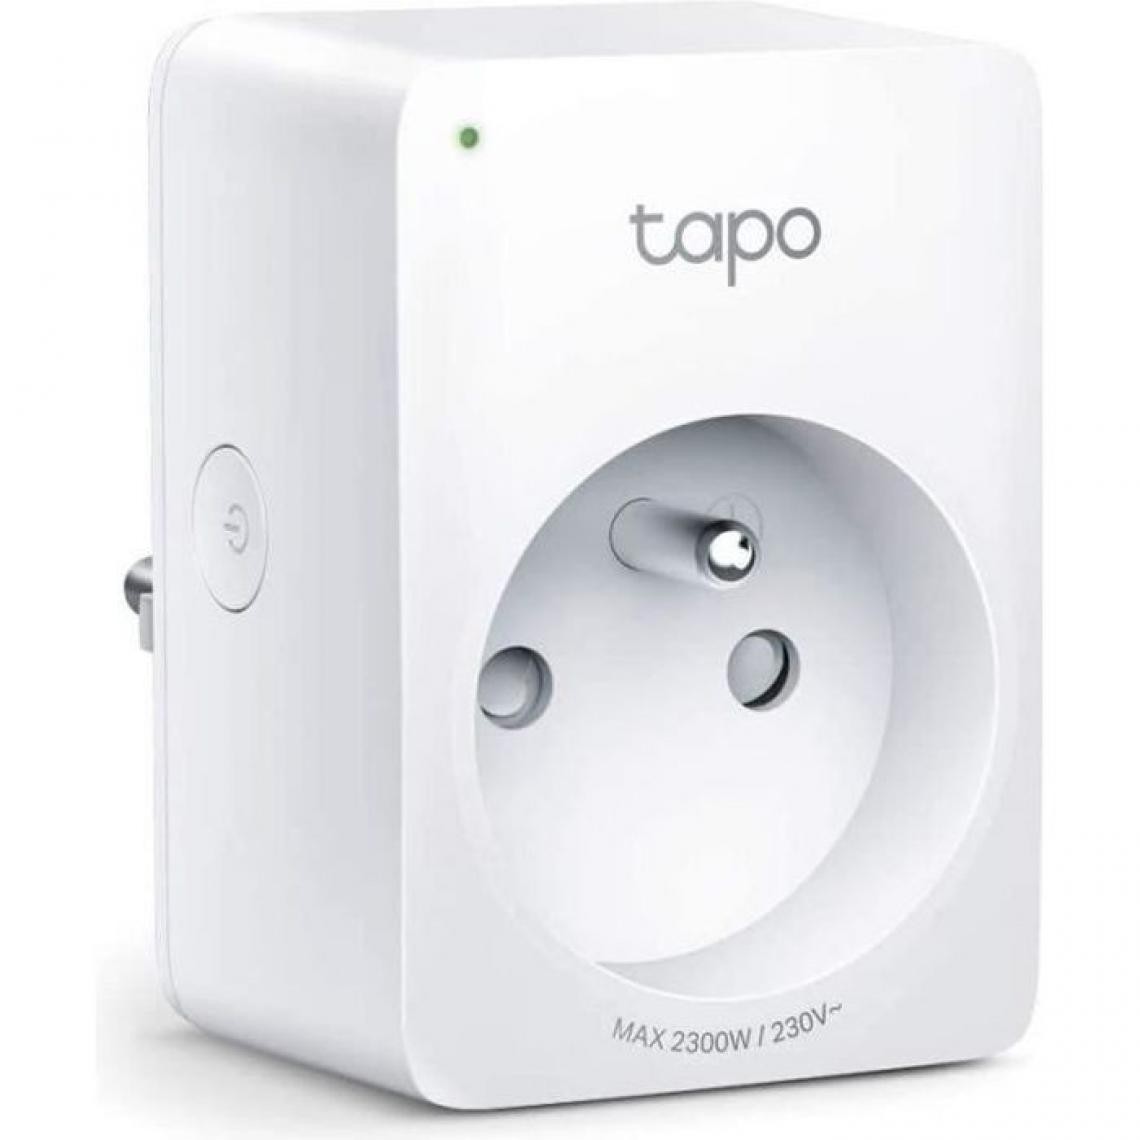 Tplink - TP-Link Tapo Prise Connectée WiFi, compatible avec Alexa, Google Home et Siri, Commande Vocale, Contrôler a distance, Tapo P10 - Fiches électriques